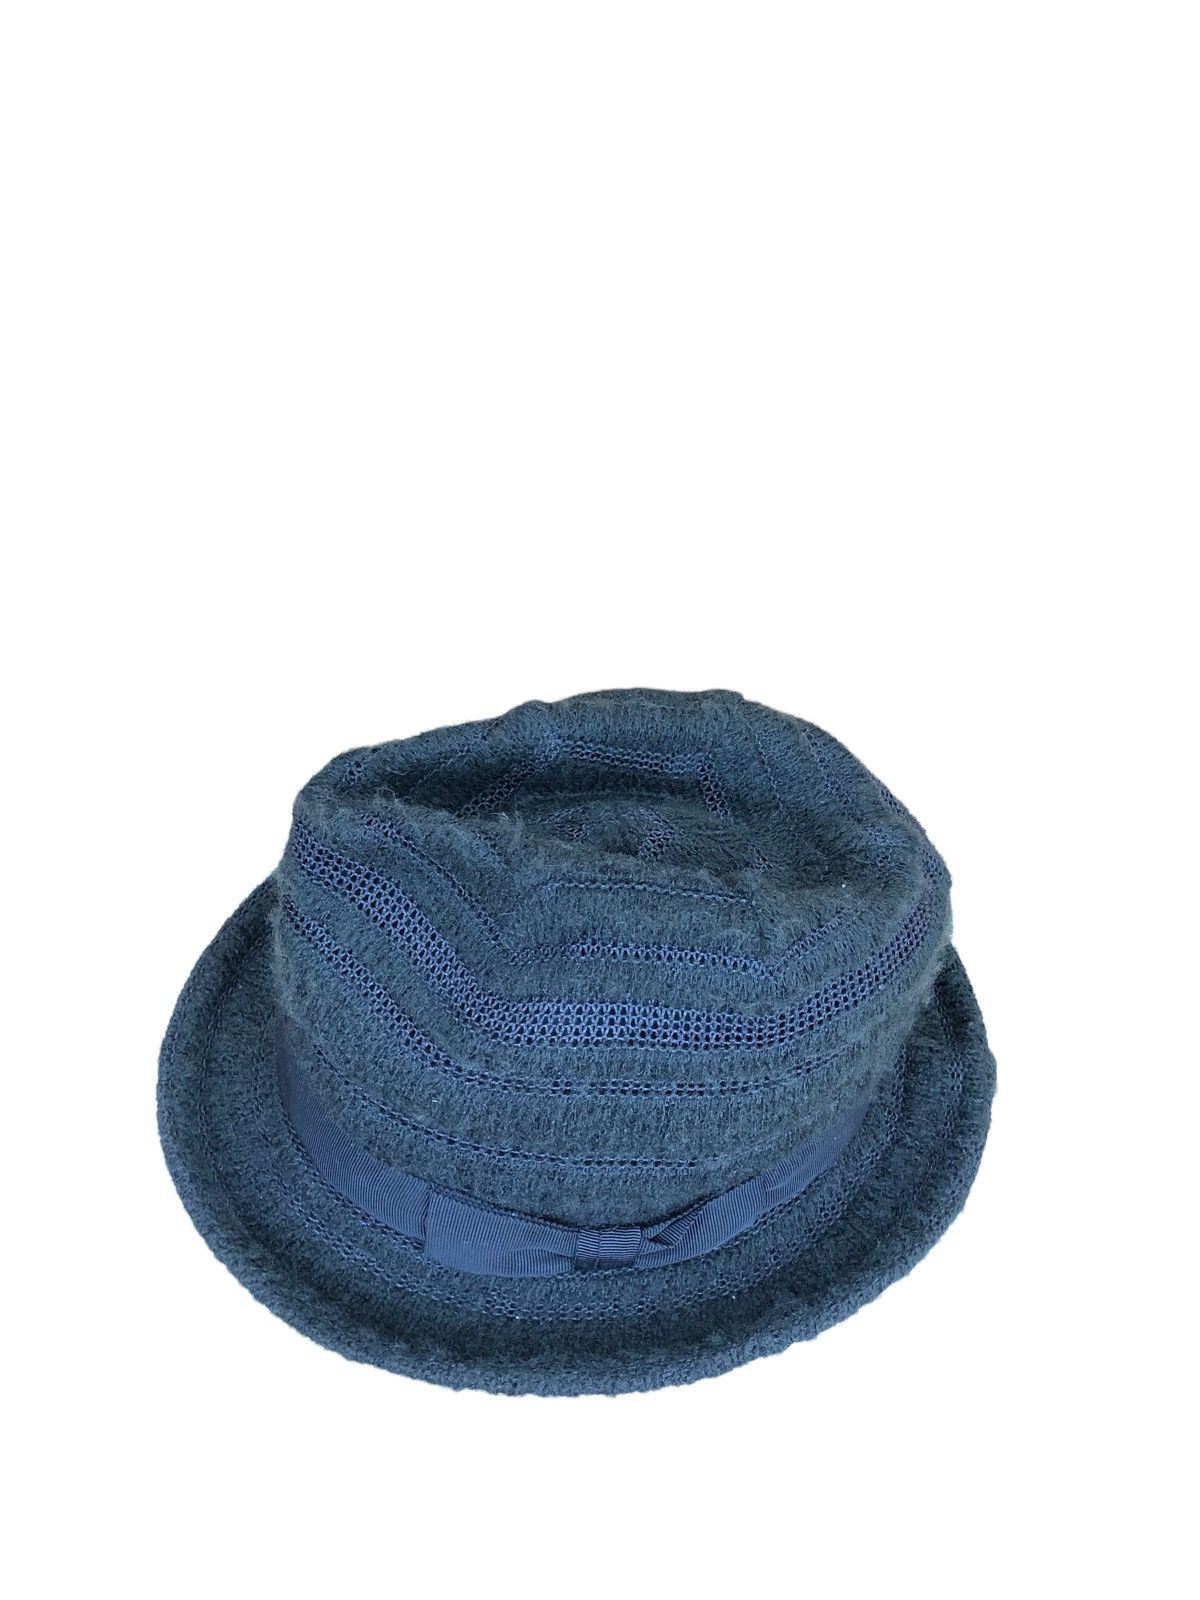 Ca4la - Bucket Hats - 3